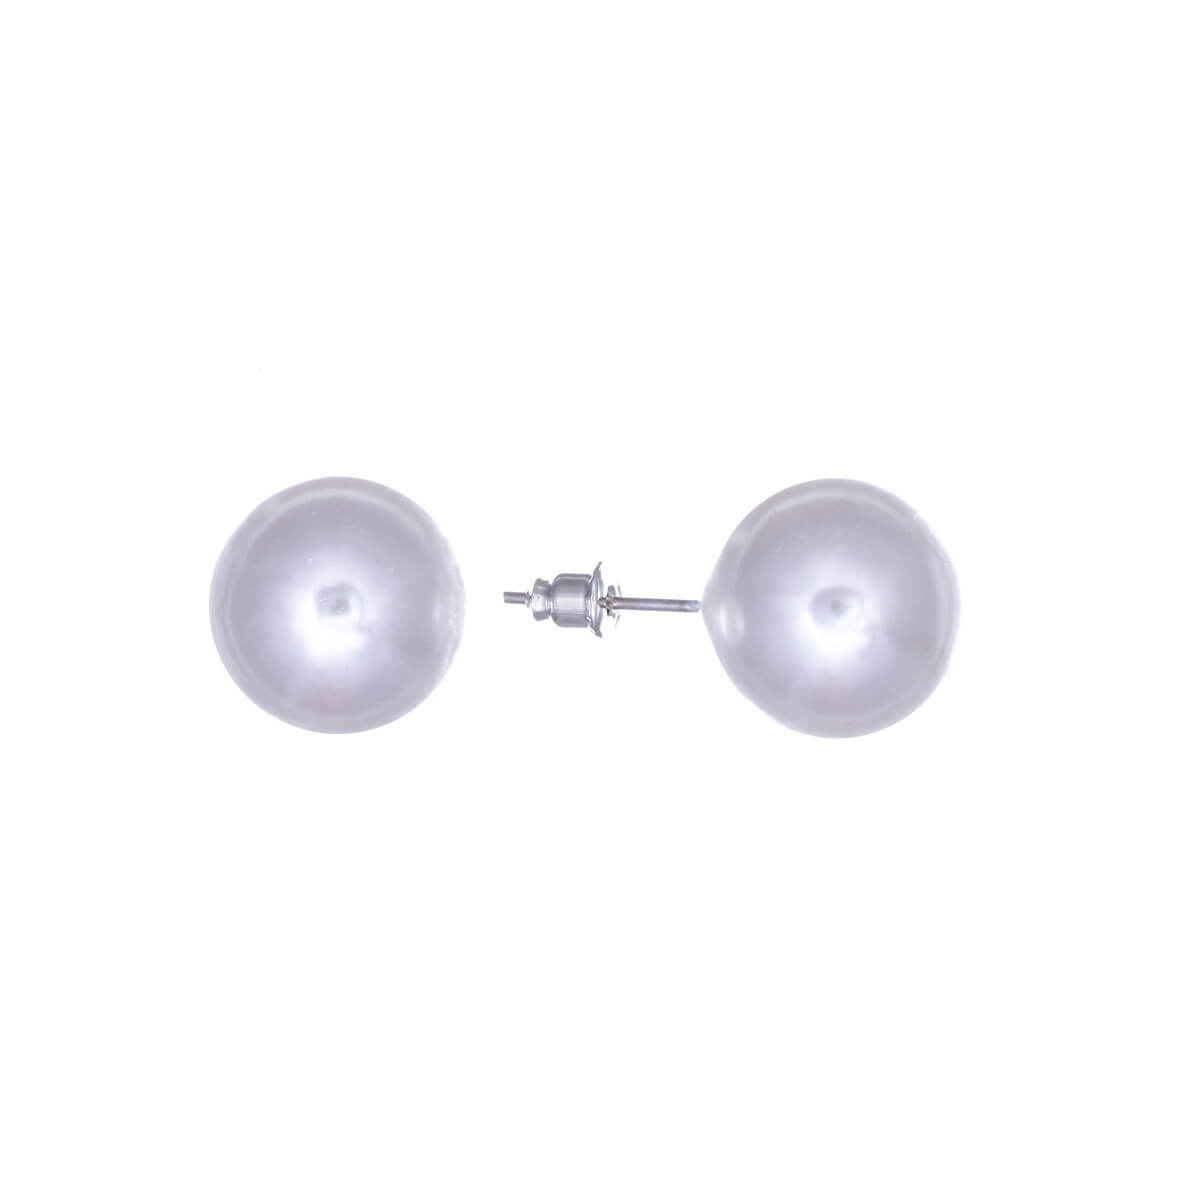 Pearl earring 16mm